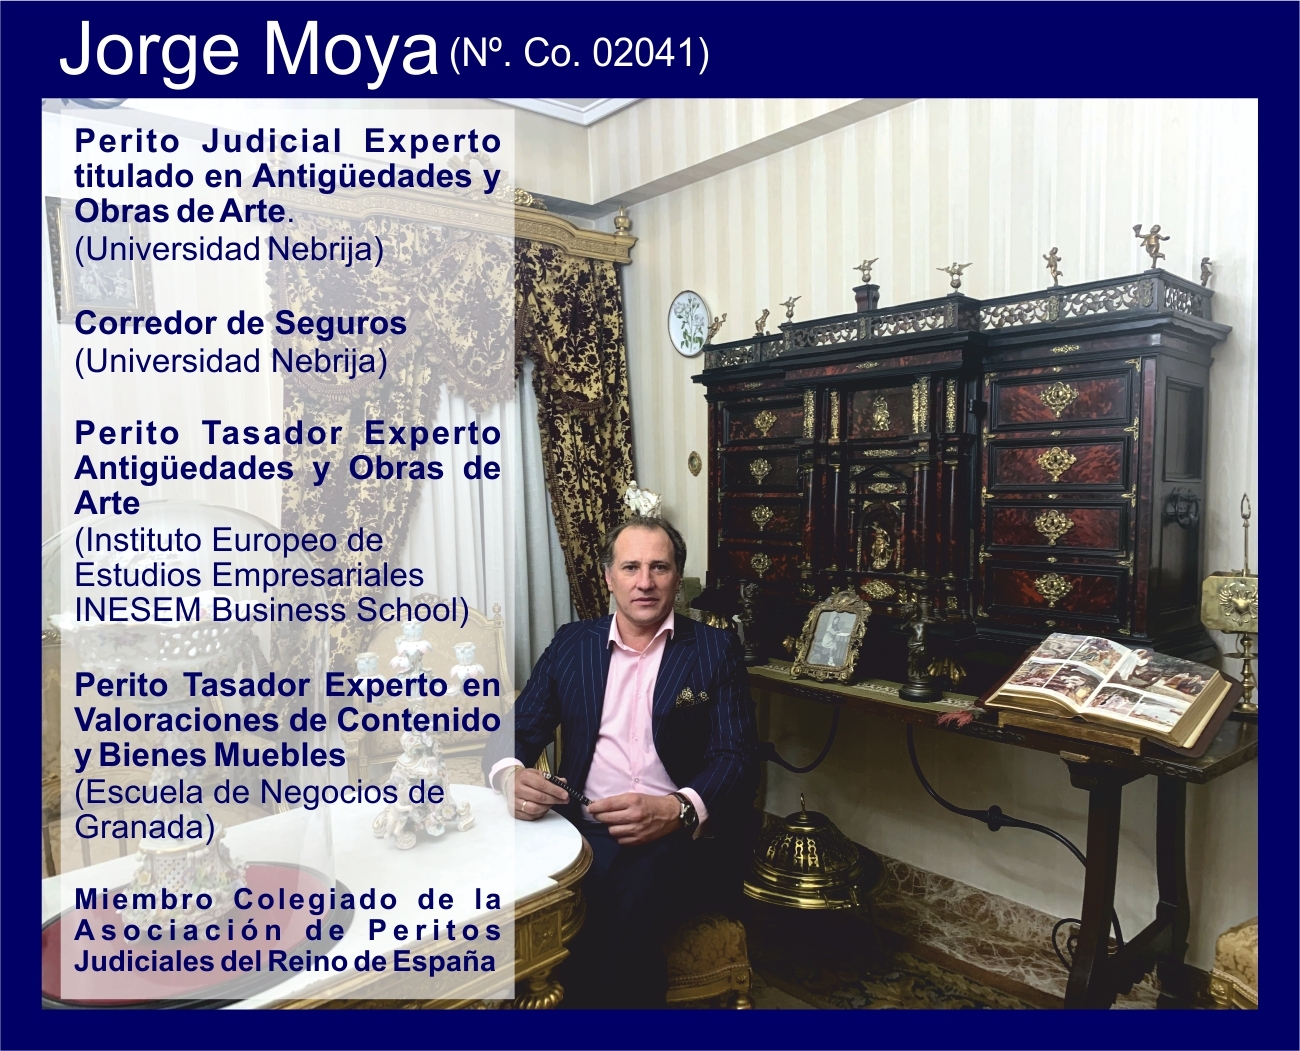 JORGE_MOYA_PERITO_JUDICIAL_ANTIGUeEDADES_Y_OBRAS_DE_ARTE